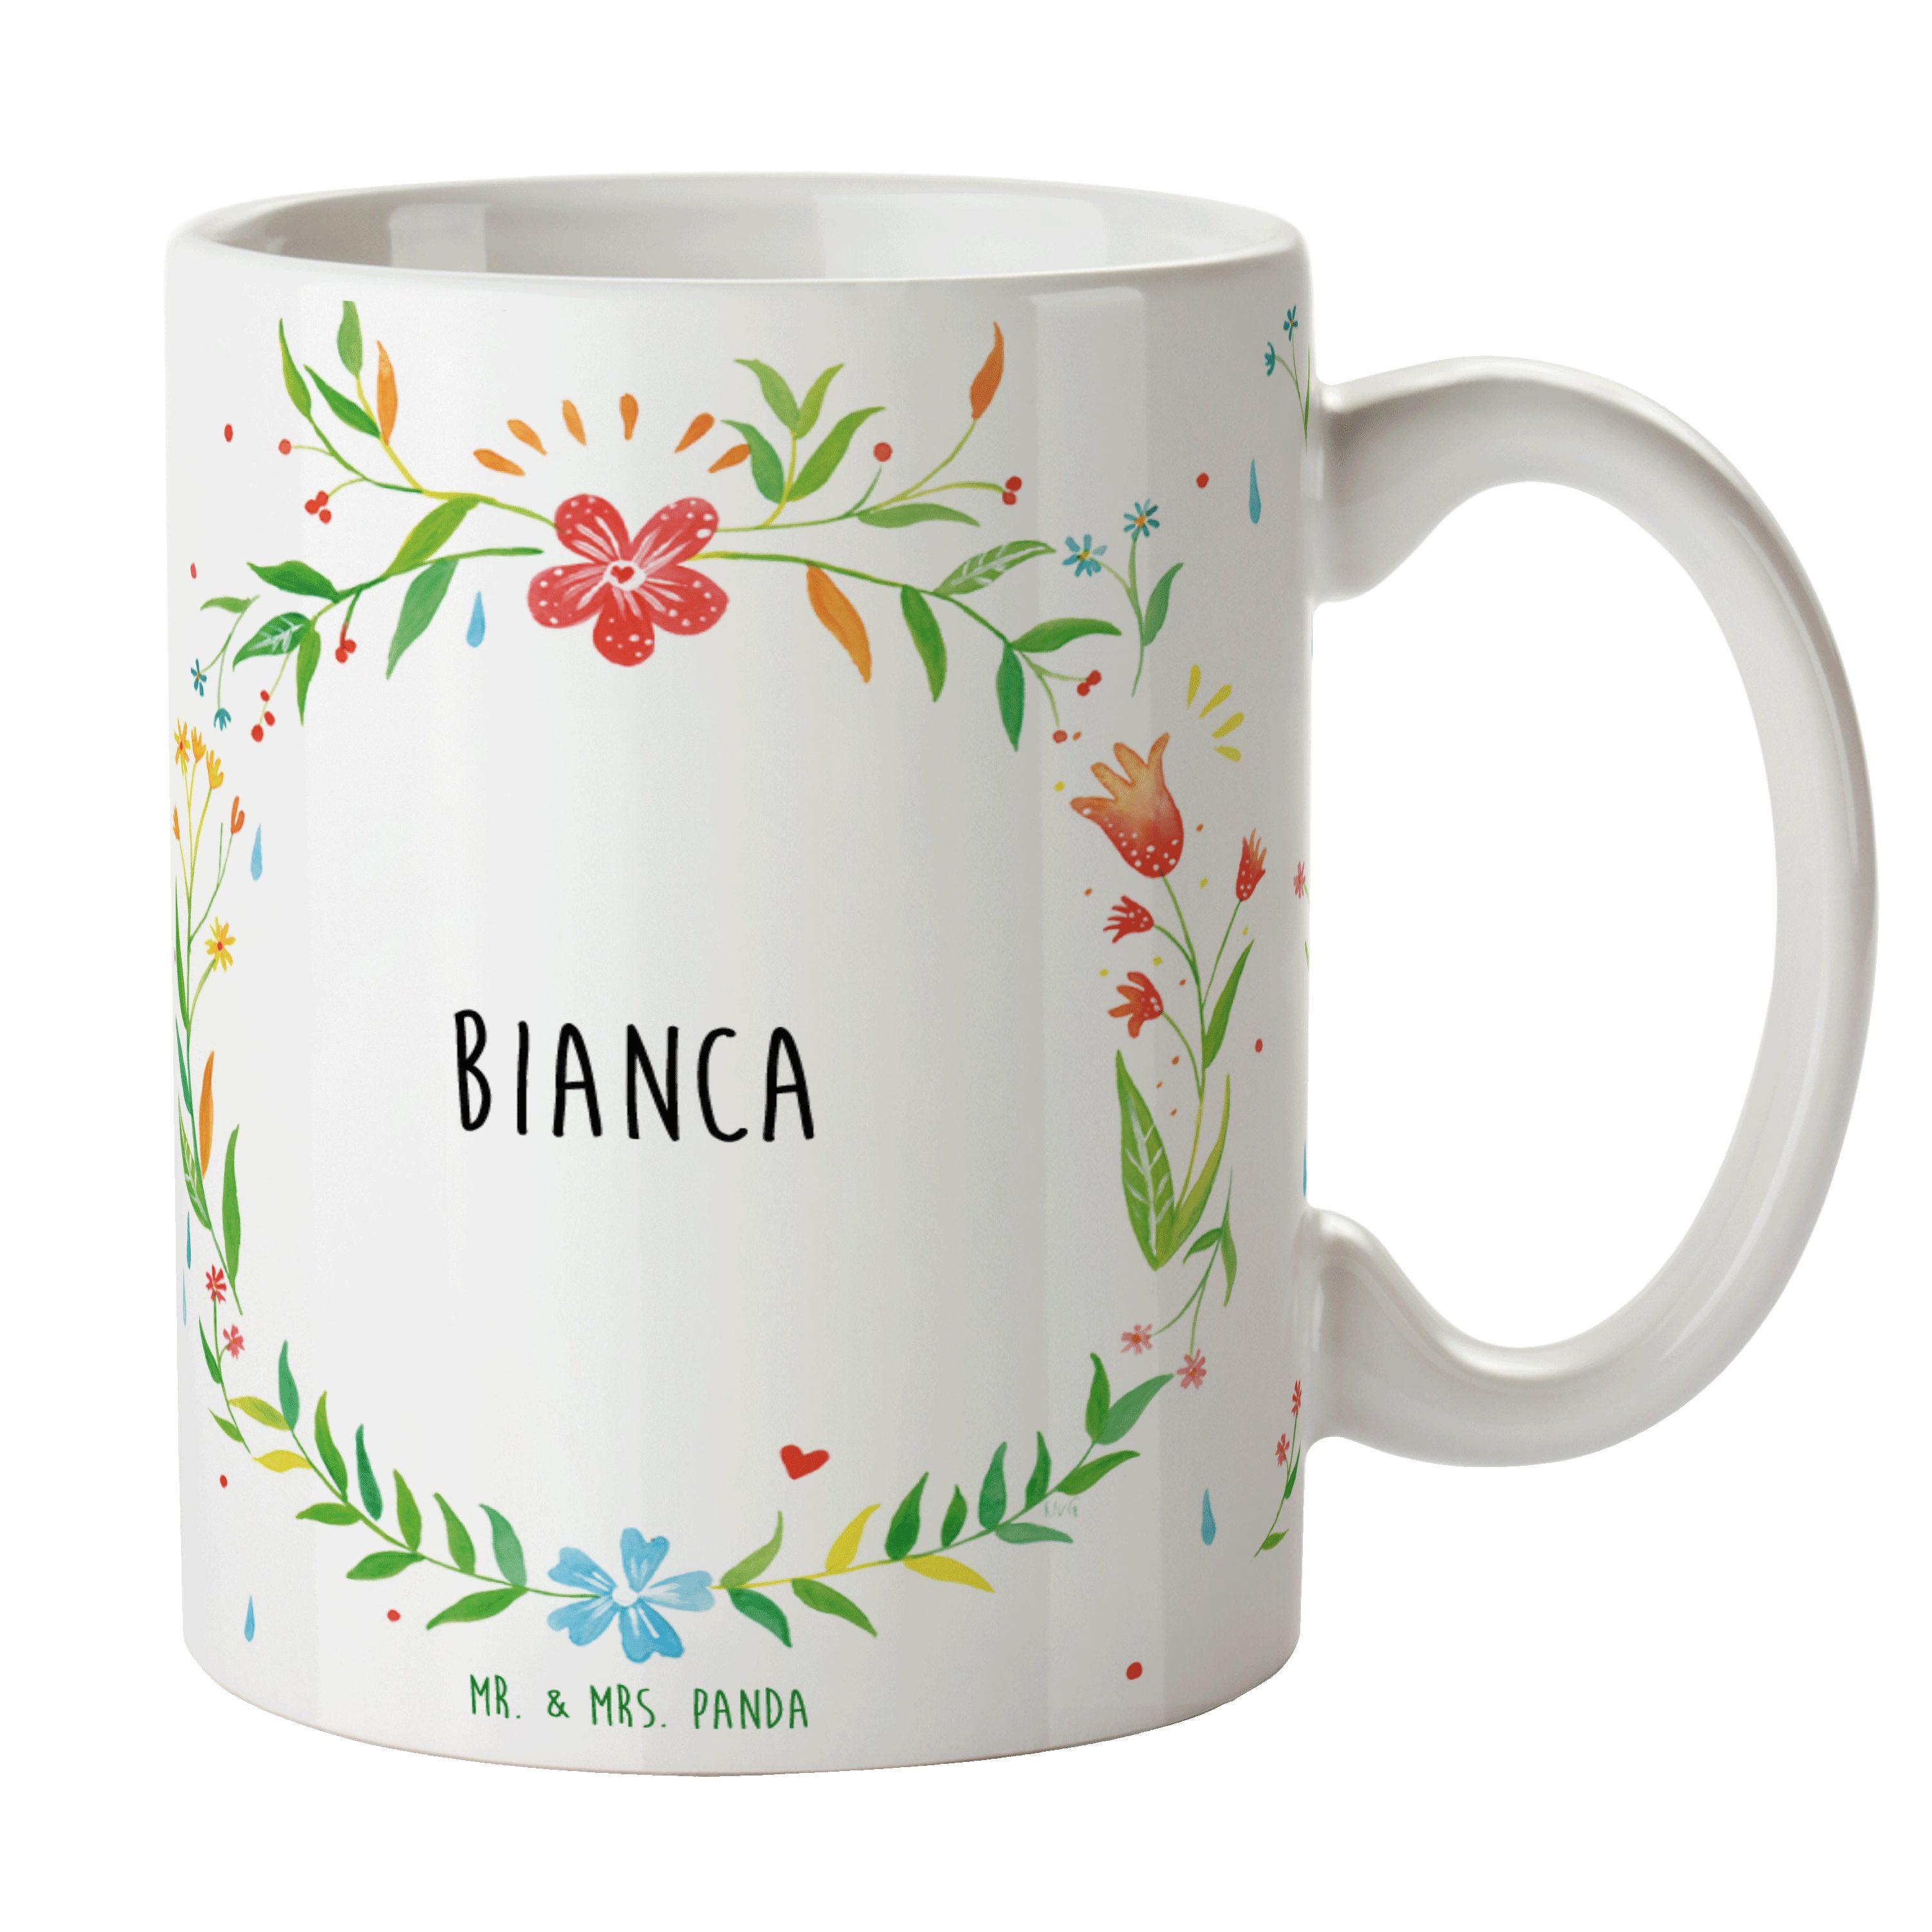 Mr. & Mrs. Panda Tasse Bianca - Geschenk, Becher, Kaffeebecher, Tasse, Keramiktasse, Geschen, Keramik